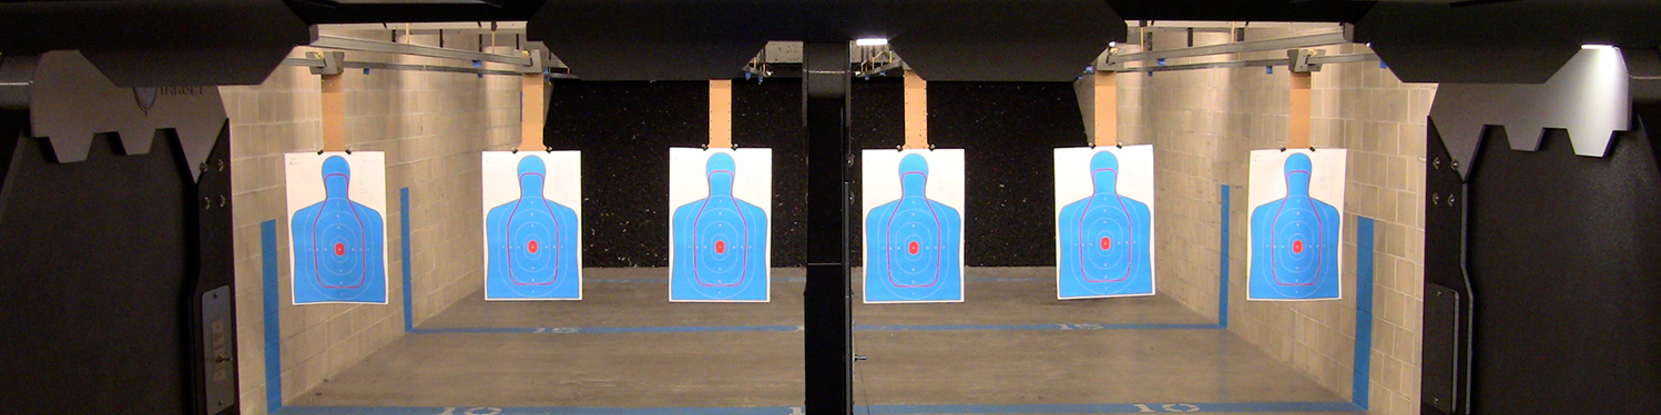 Firearms - Shooting Range - Training | Target Time Defense